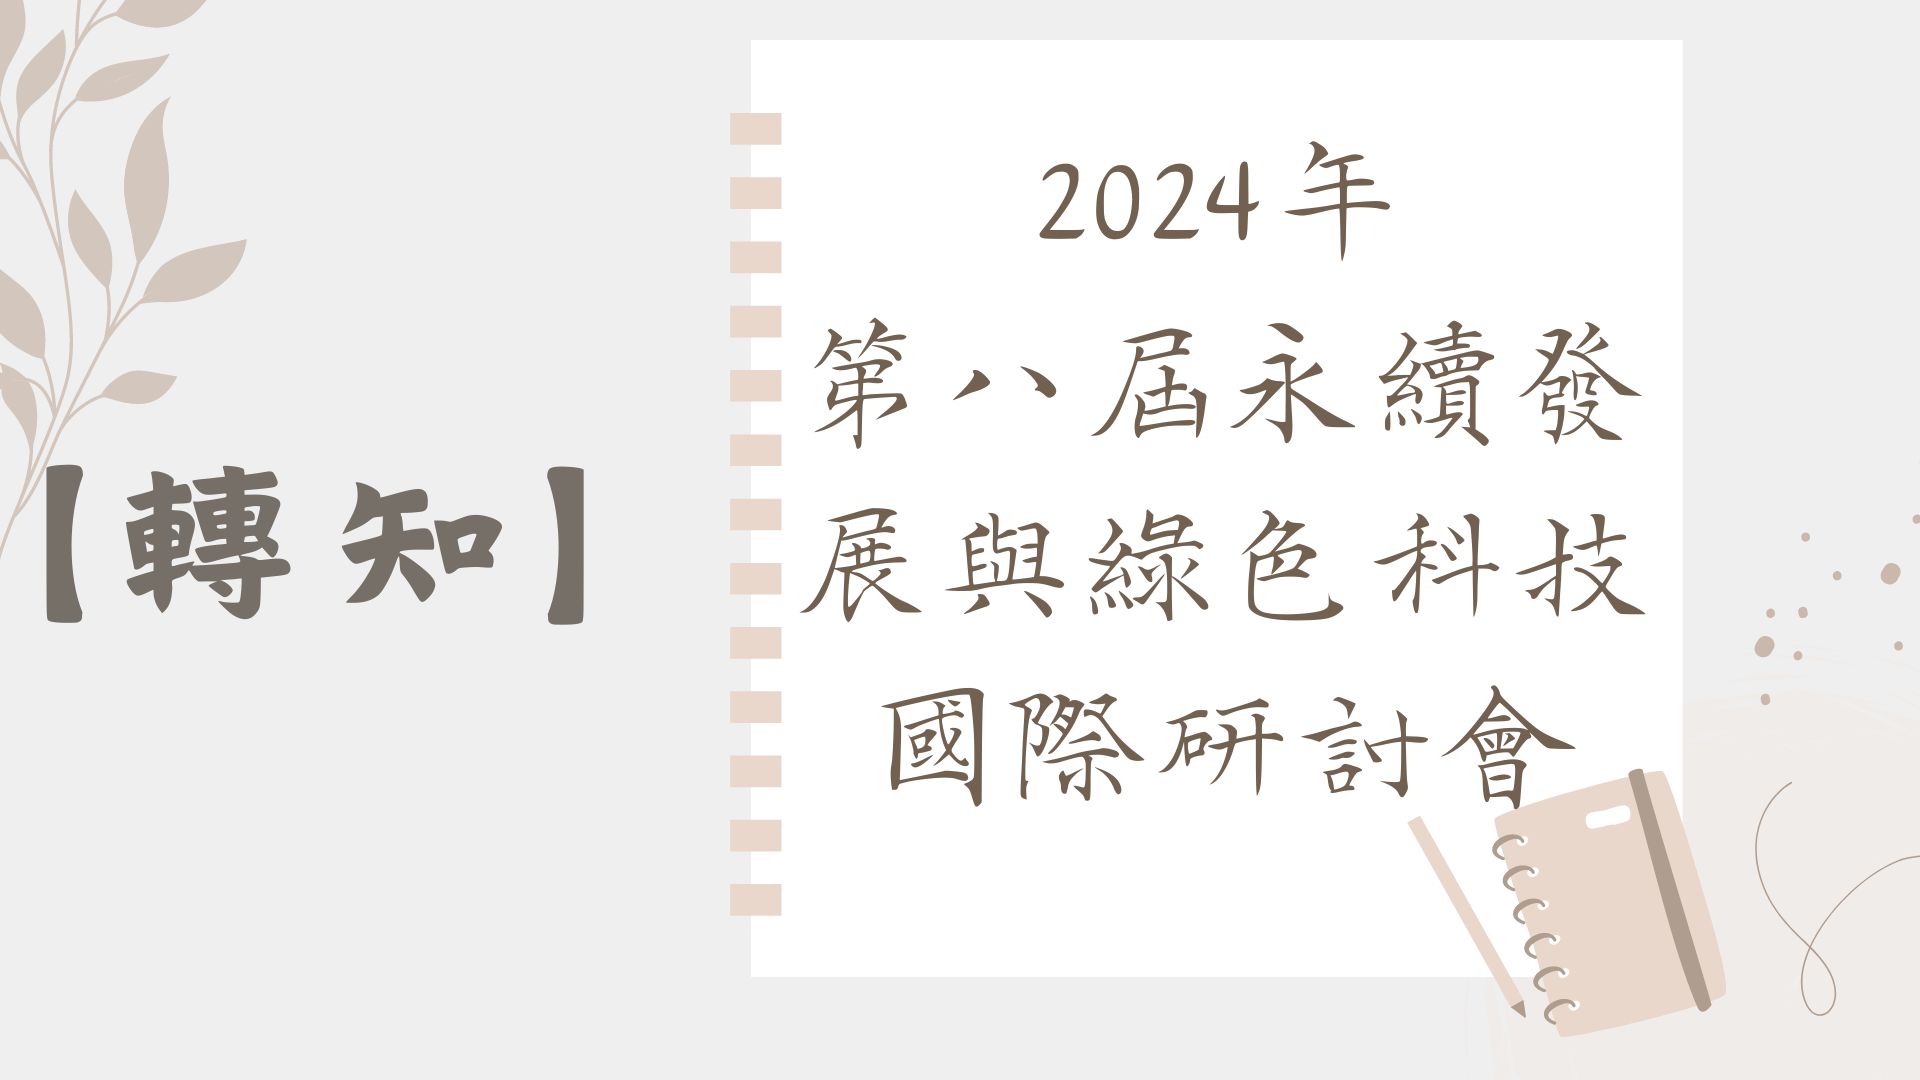 【【轉知】2024年 第八屆永續發展與綠色科技國際研討會】